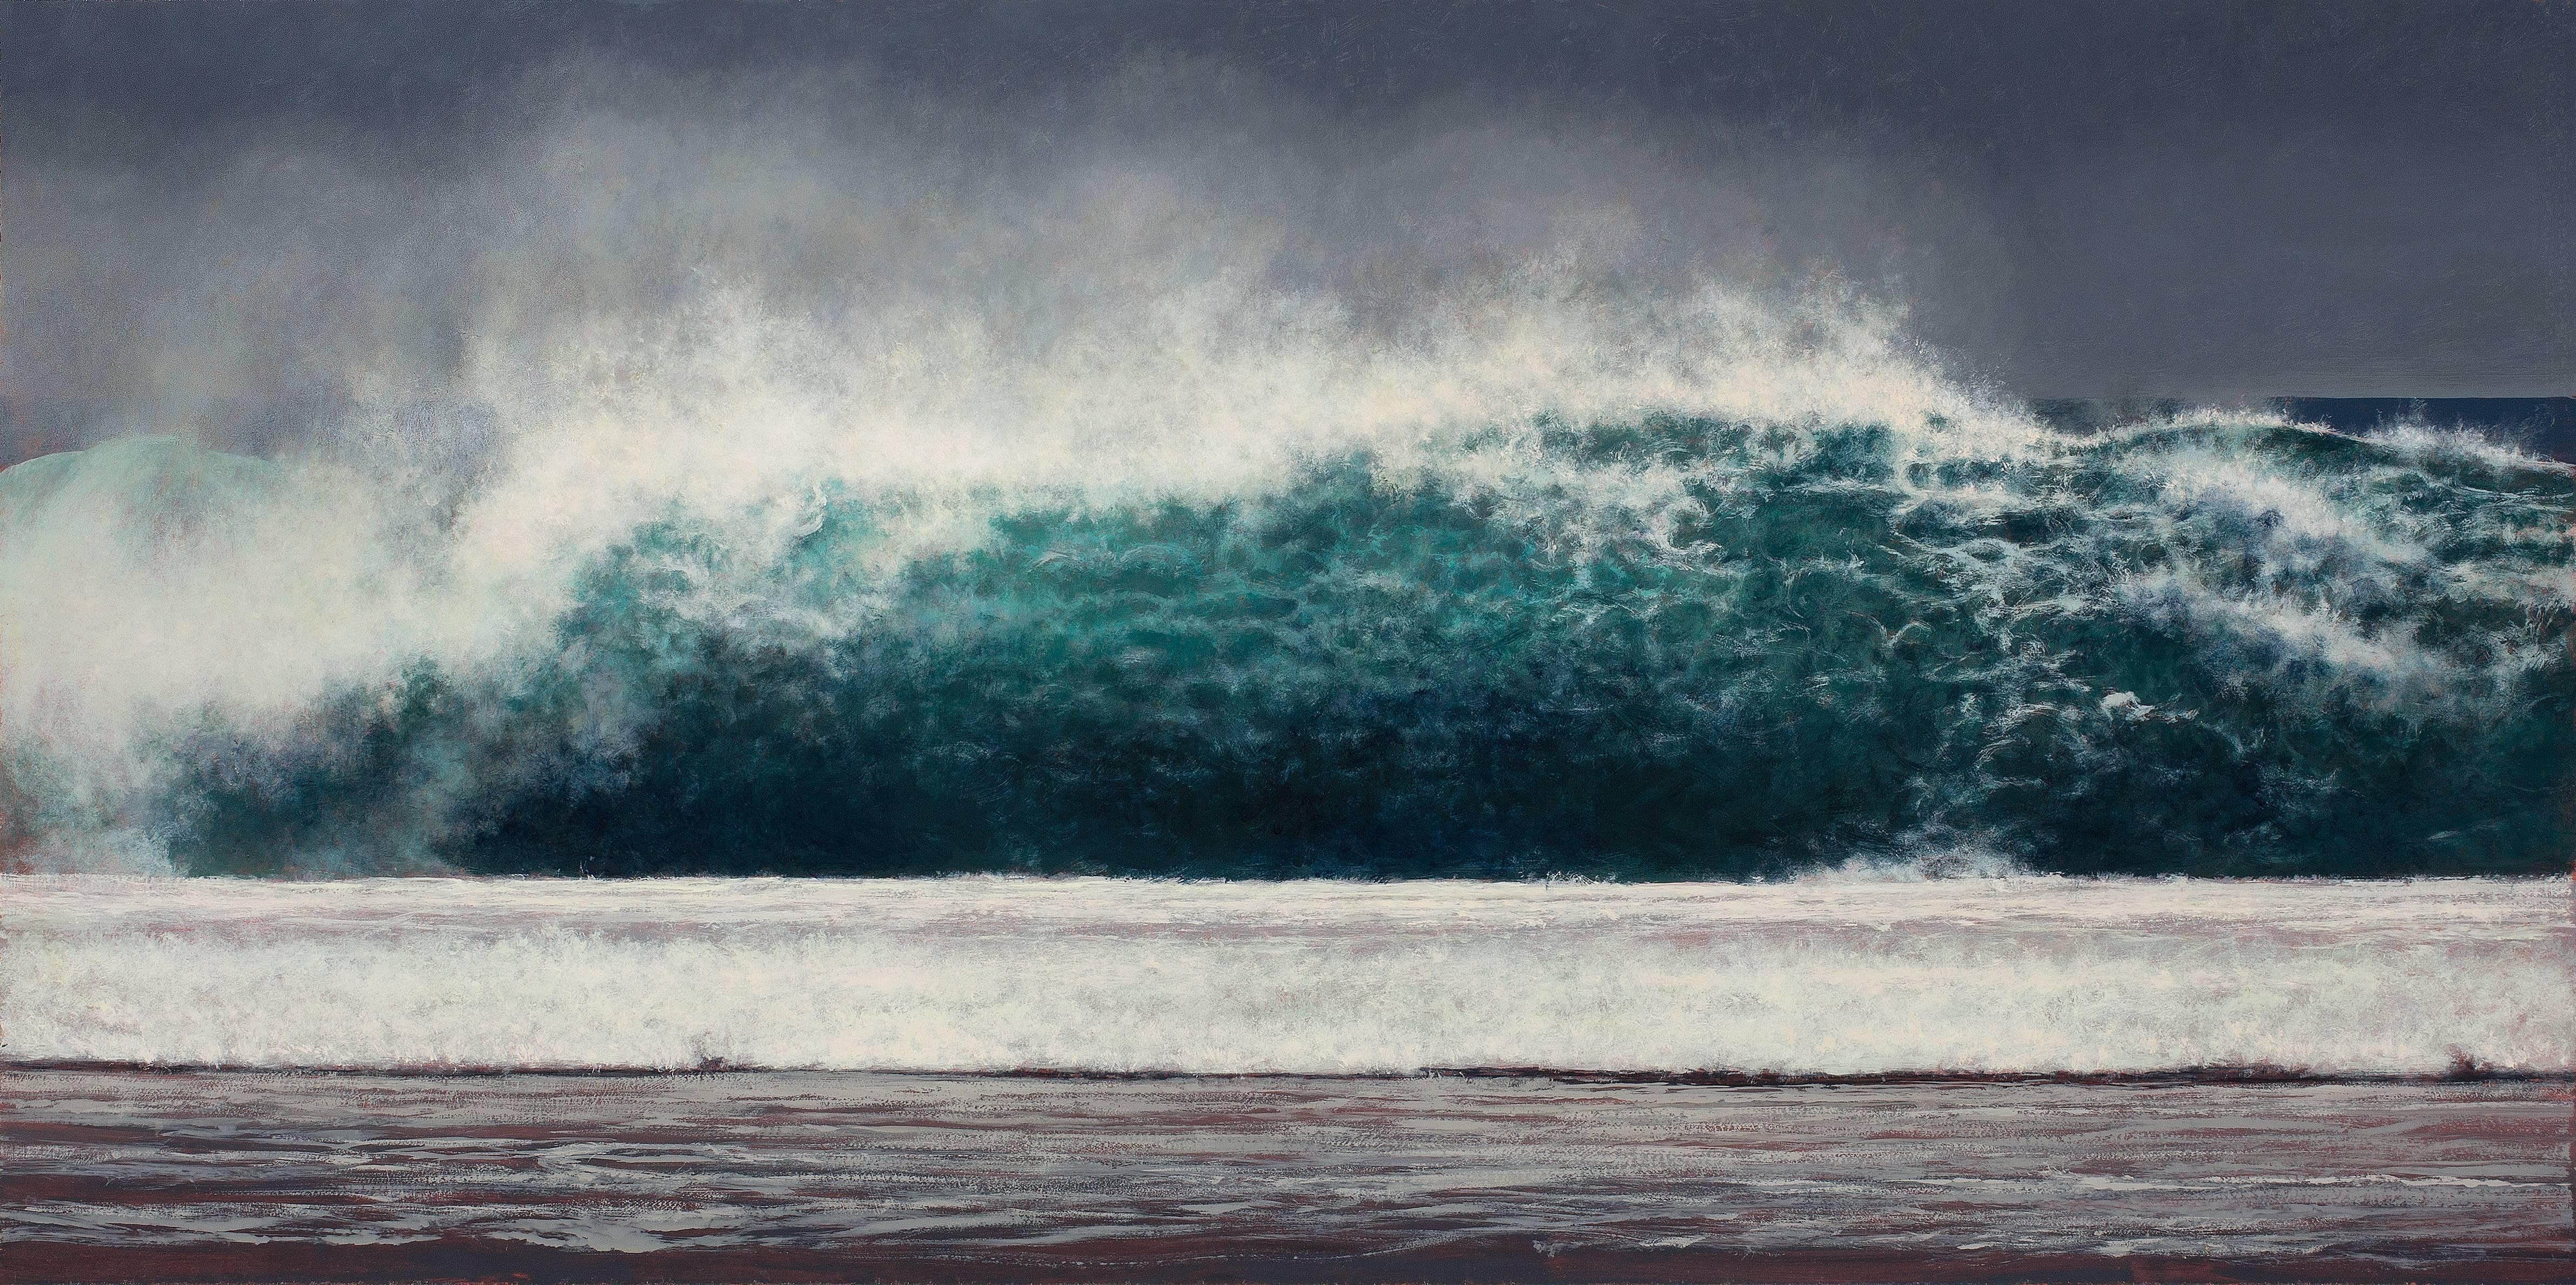 Jeff Aeling Landscape Painting – Wave Wave, Kauai – Öl auf Tafel, Gemälde in blauem Türkis, weißem Meeresschaum und grauem Grau